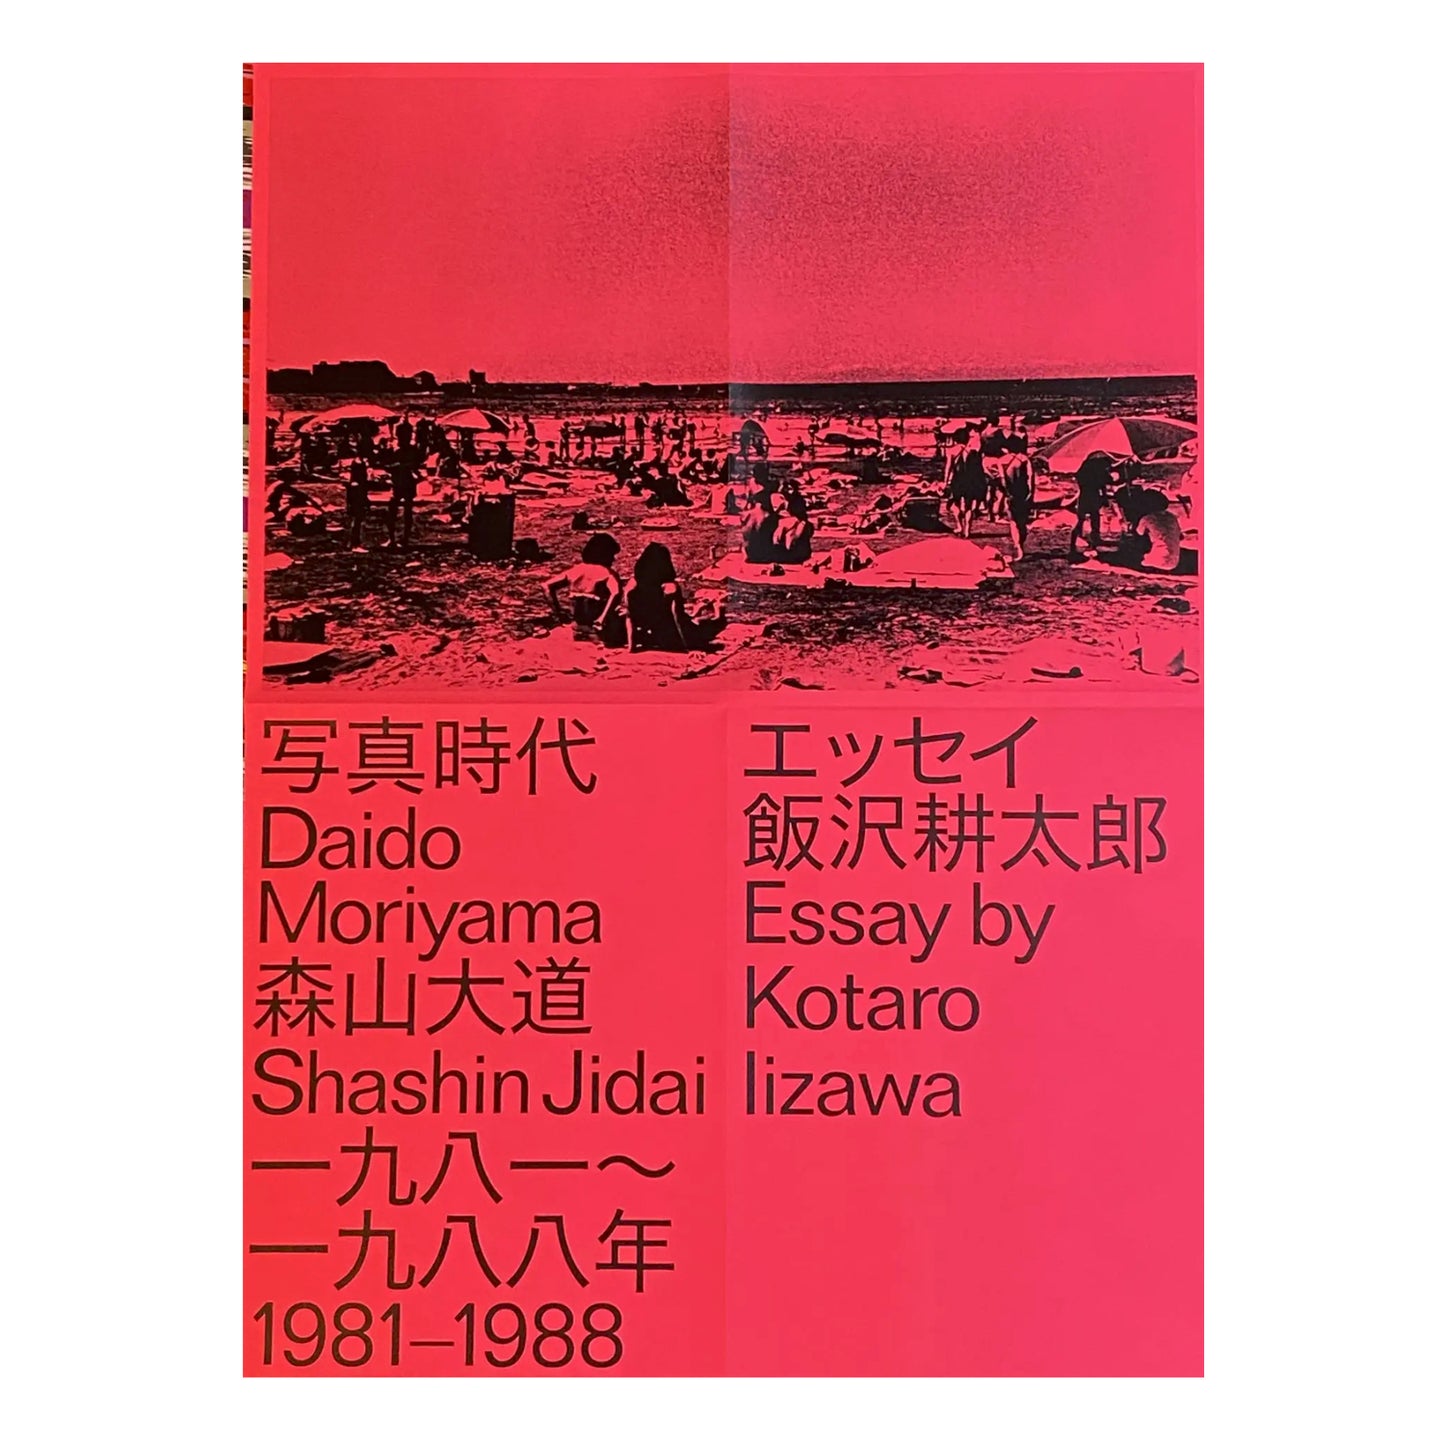 Daido Moriyama Shashin Jidai 1981 - 1988